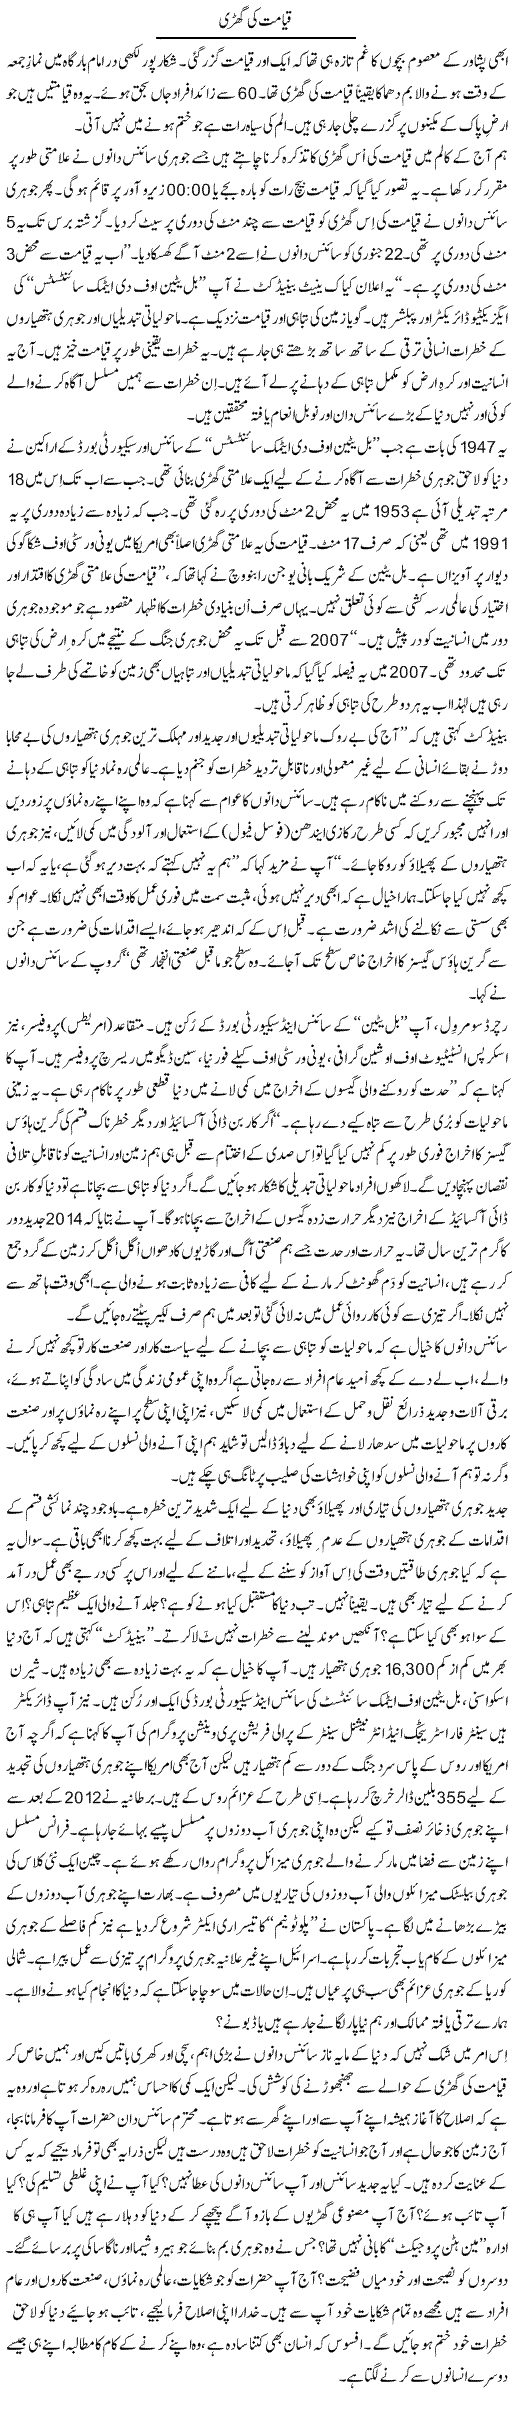 Qayamat Ki Ghari | Shaikh Jaber | Daily Urdu Columns